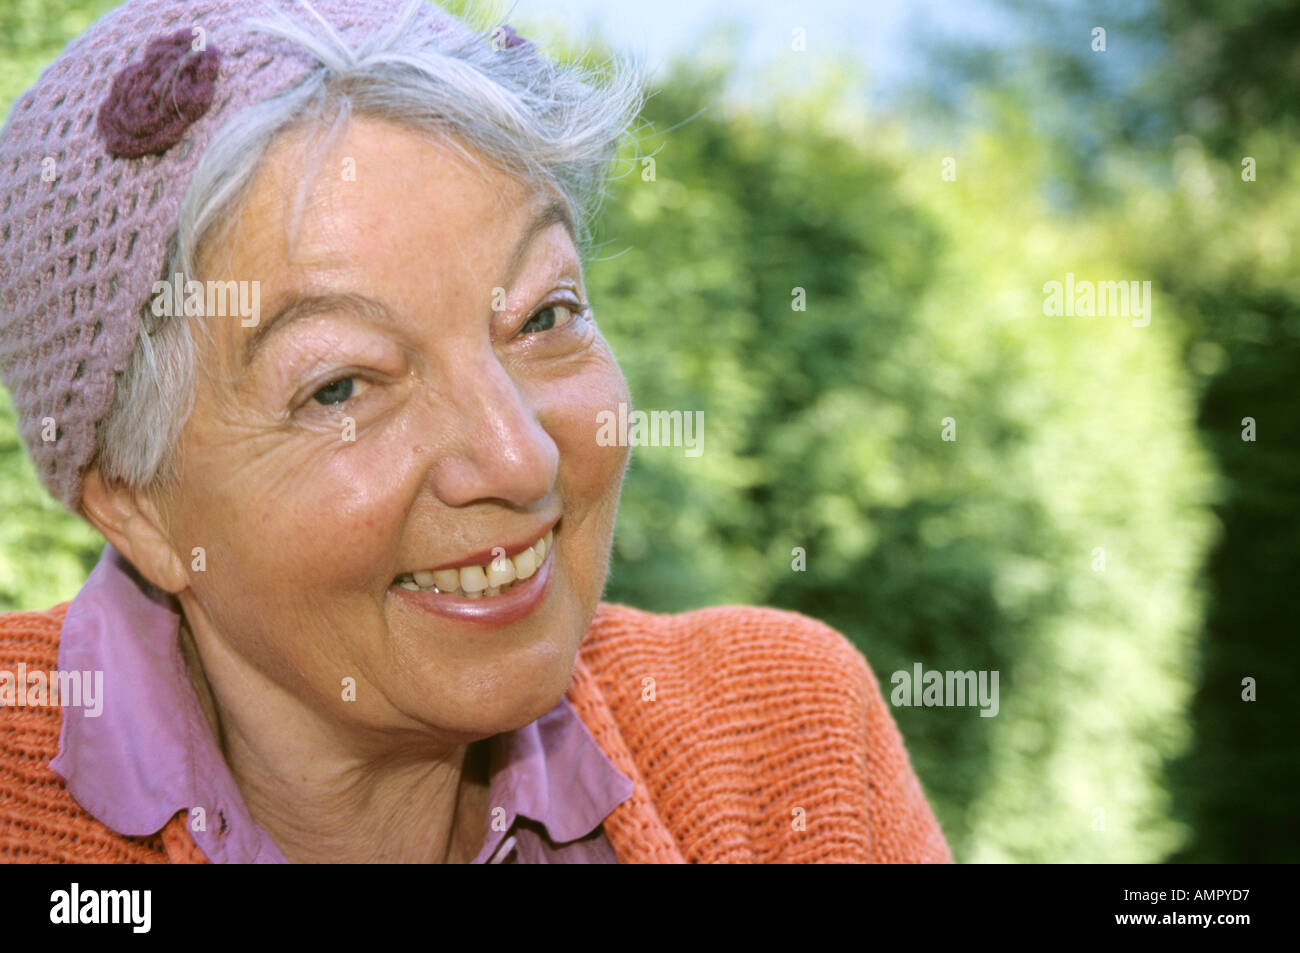 Senior woman smiling, close-up Banque D'Images